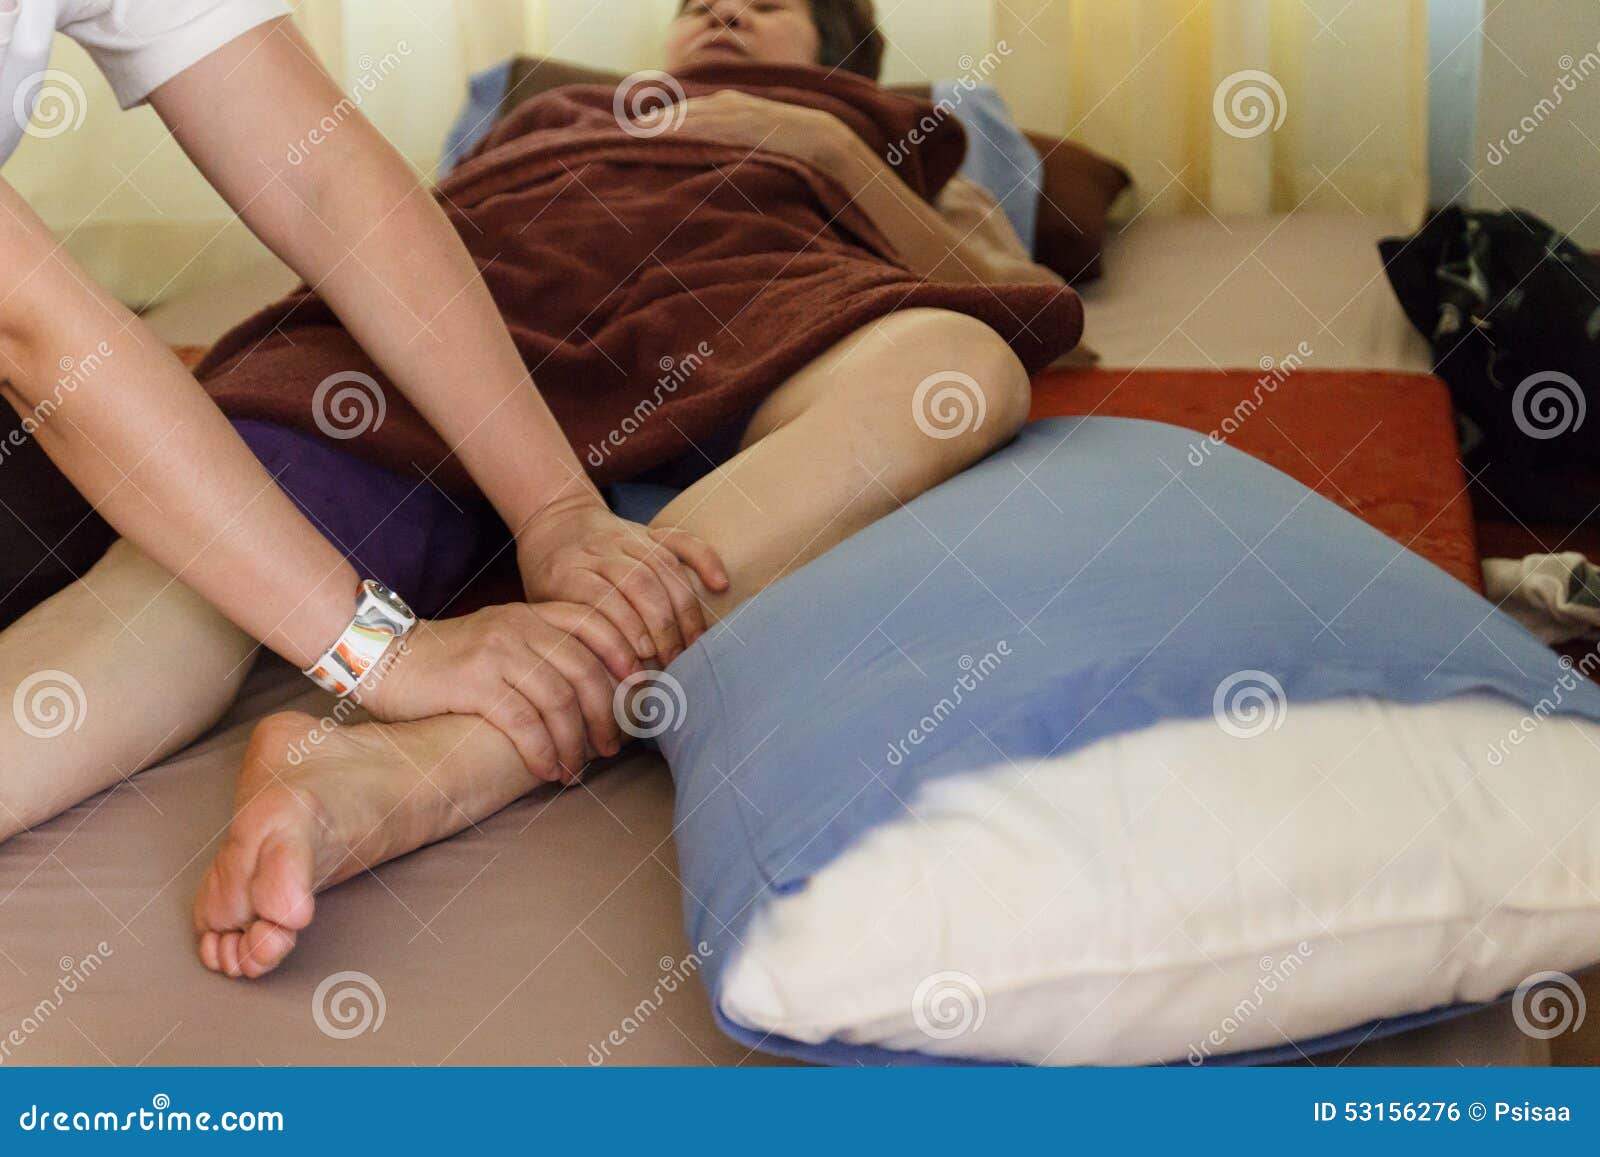 Сын делает мама массаж видео. Ноги матери массаж. Массаж ступней маме. Мамины ноги массаж. Массаж ног бабушке.